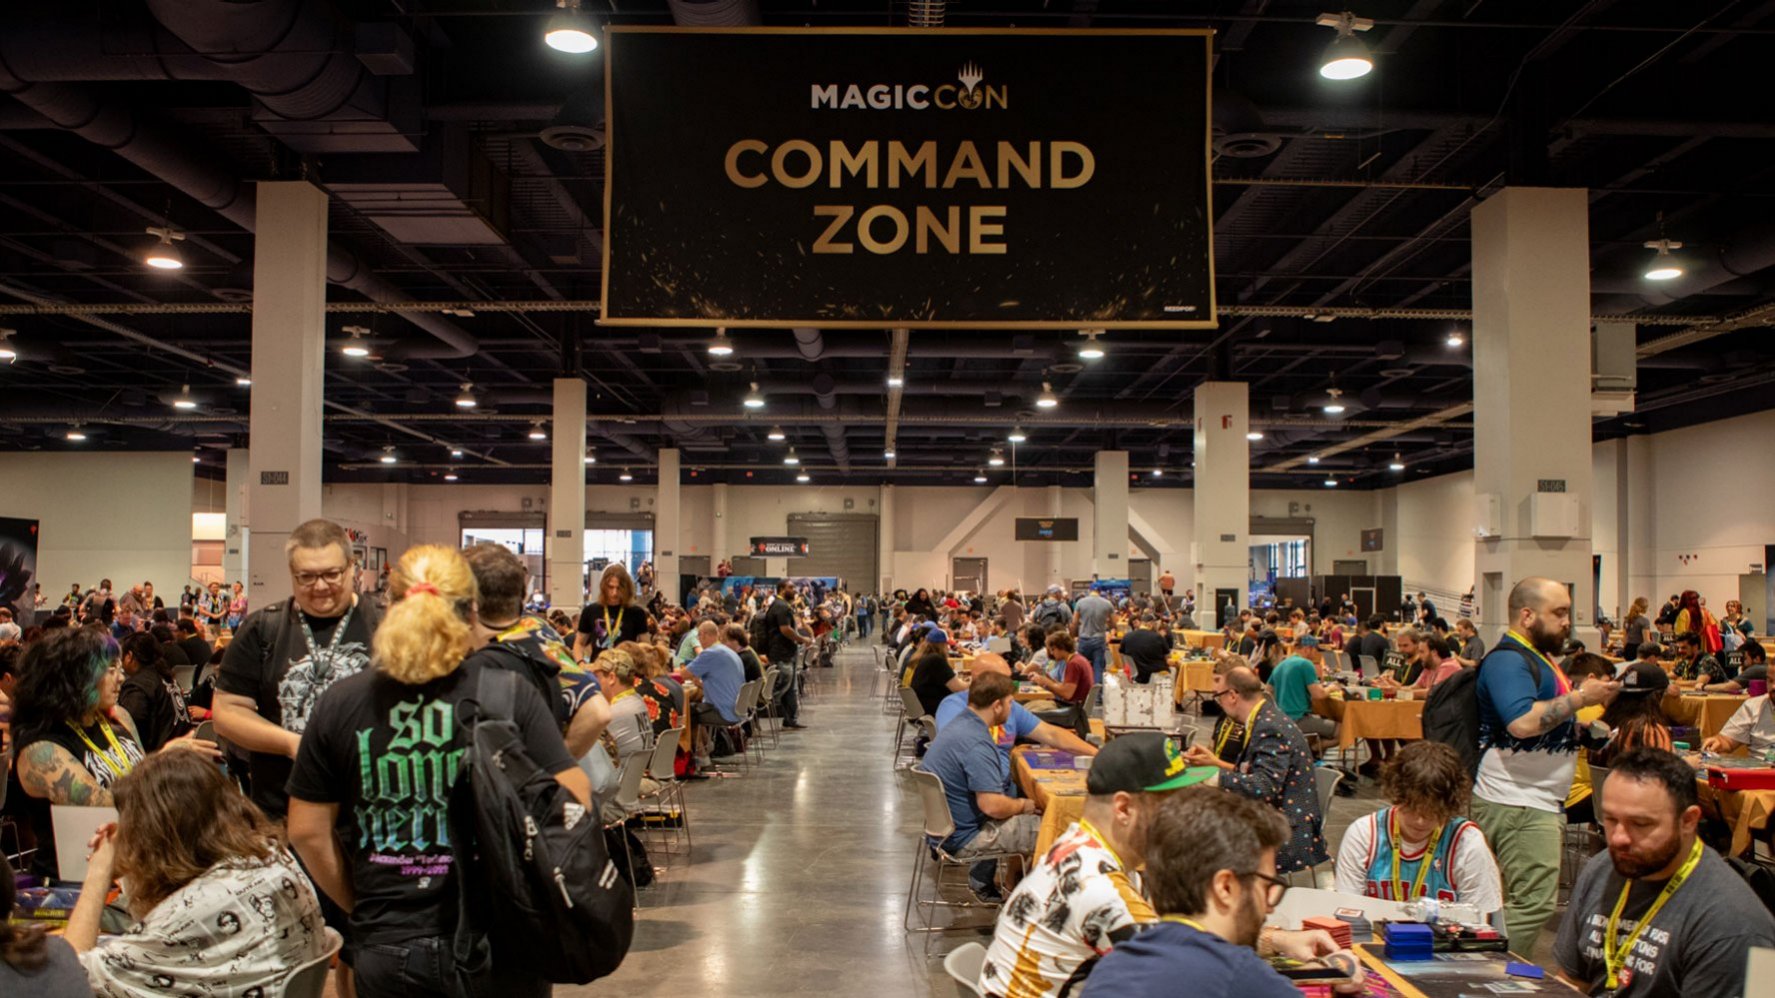 Magic Con: Command Zone